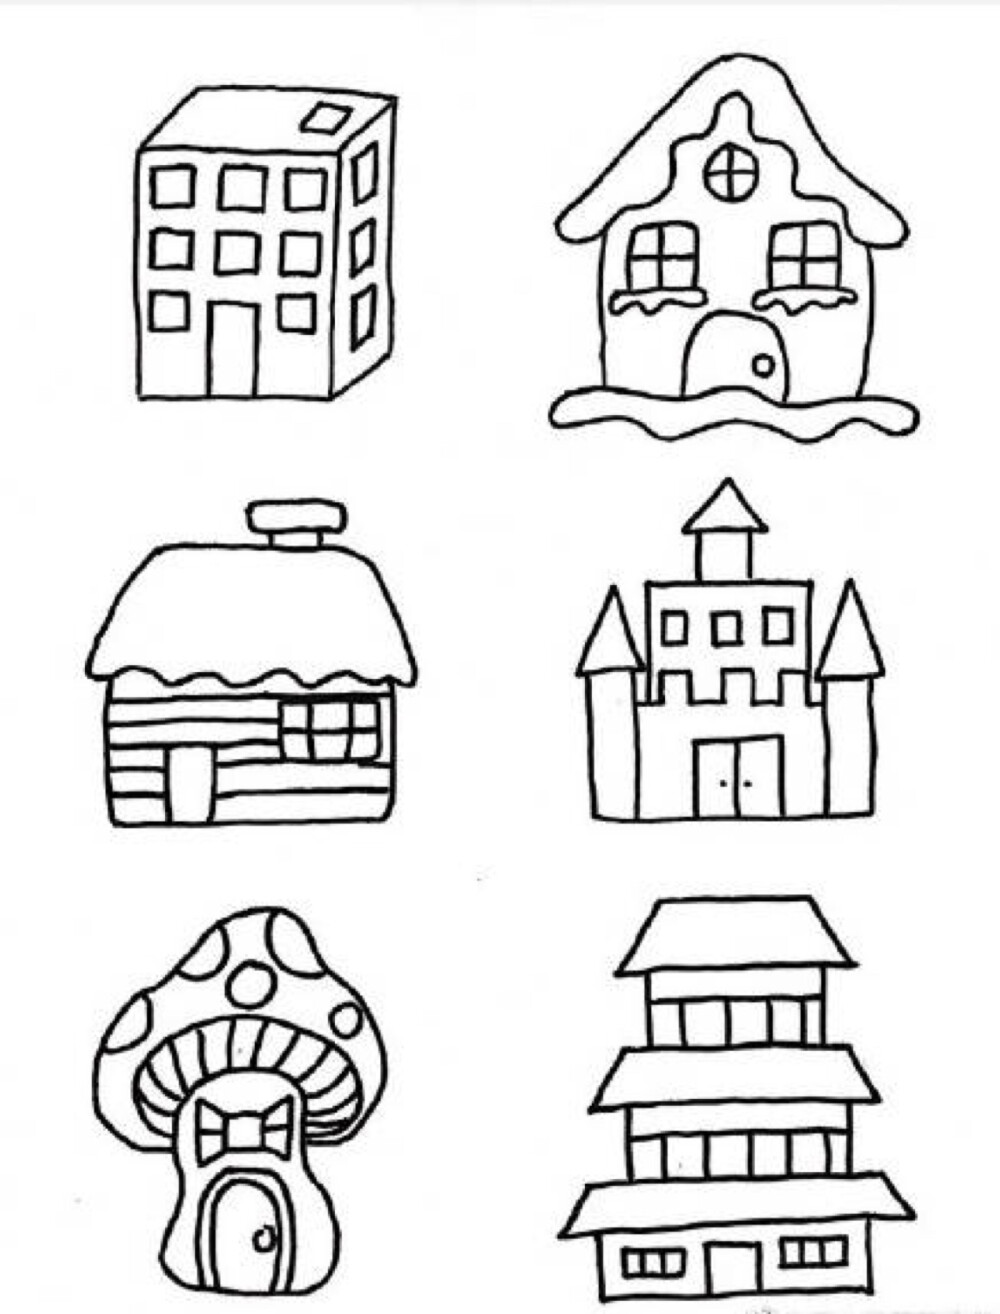 房子简笔画 - 堆糖,美图壁纸兴趣社区